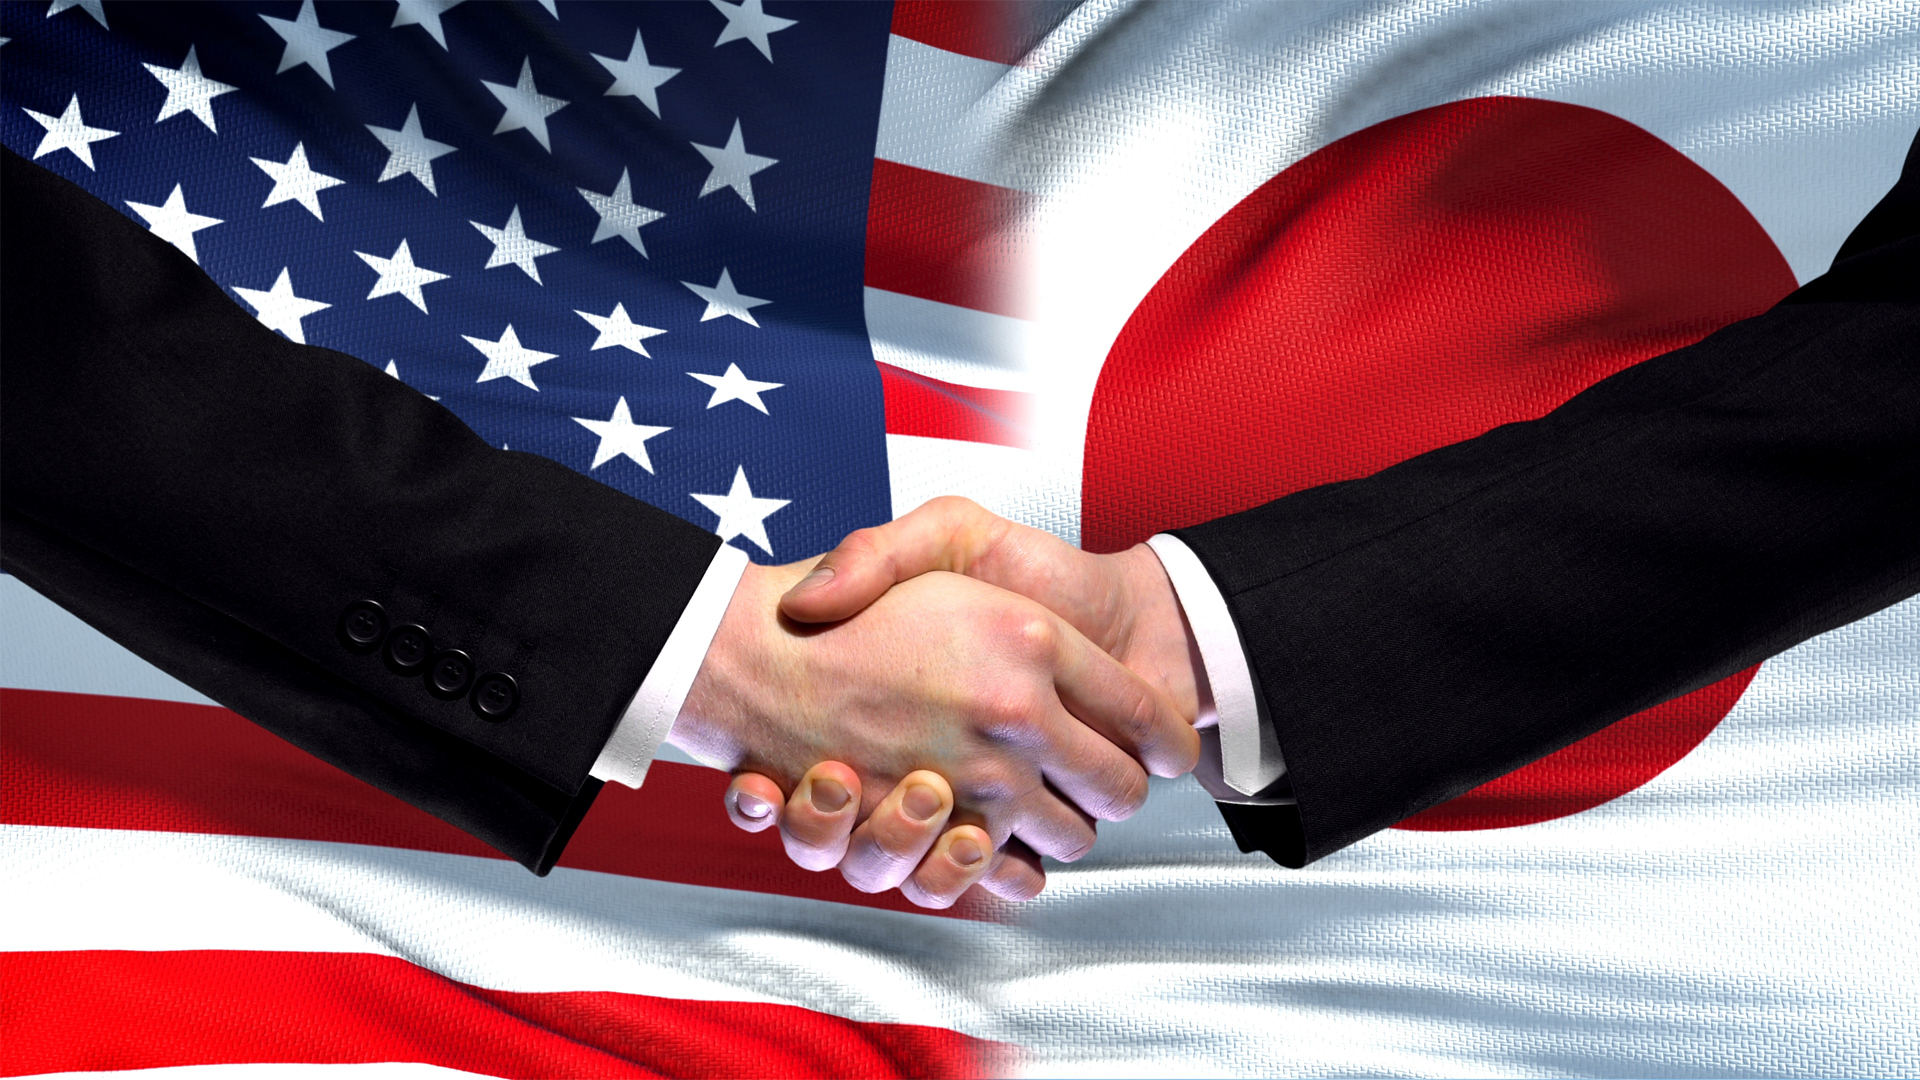 United States and Japan handshake, flag background Image